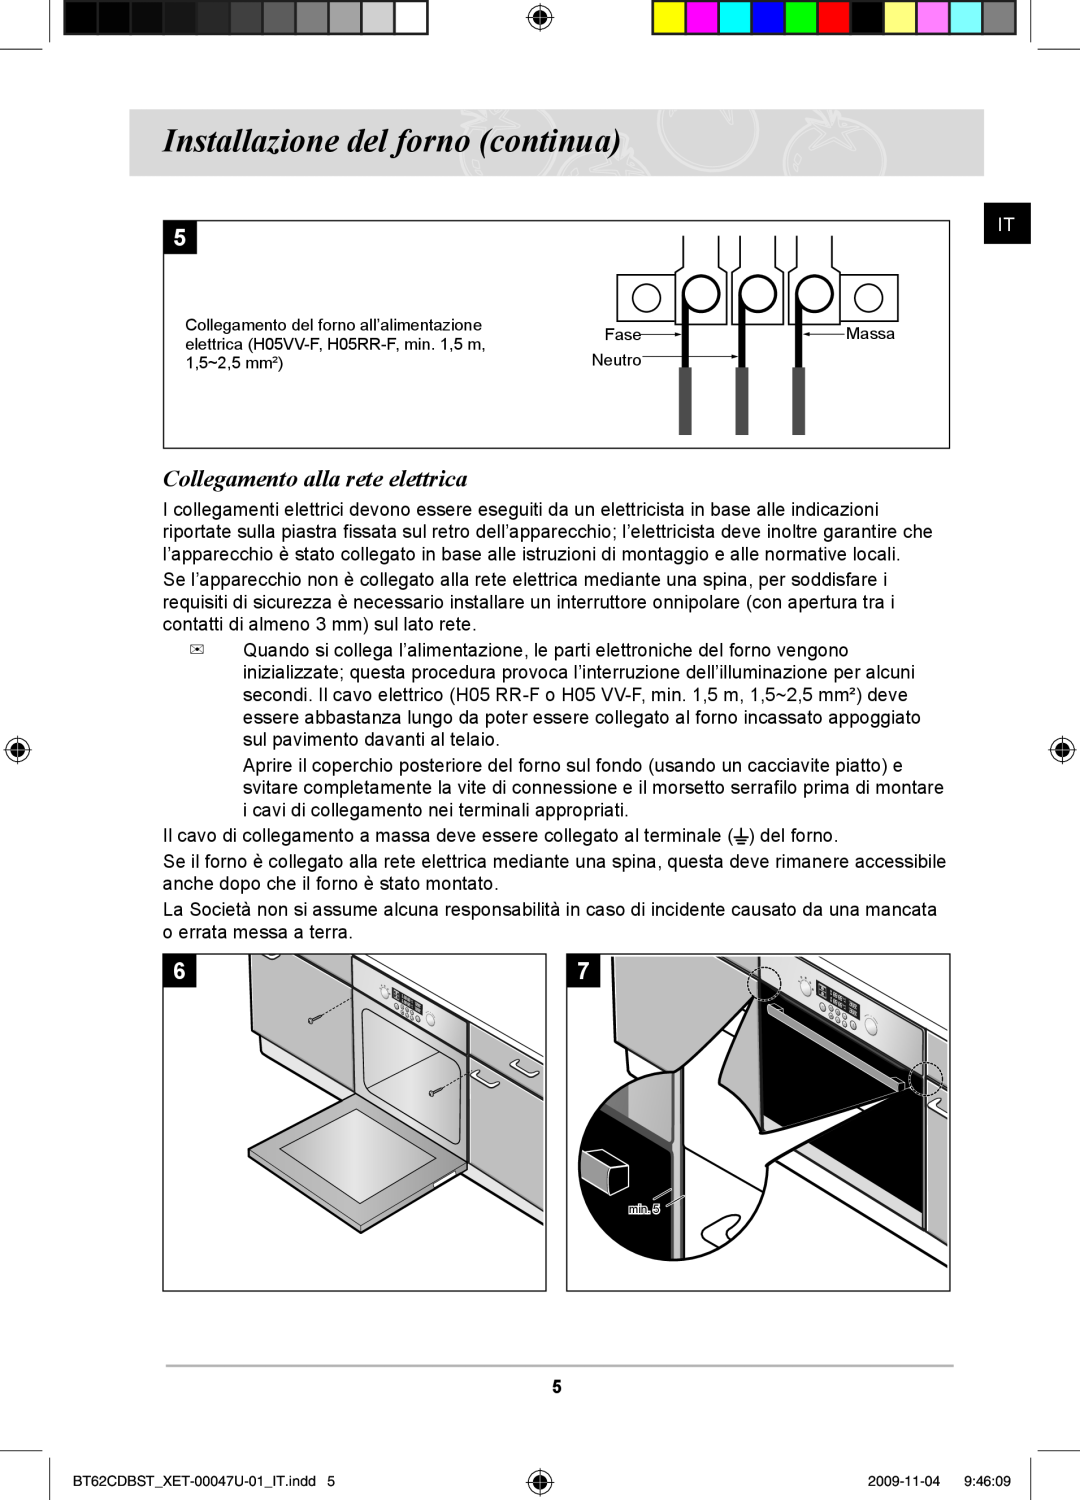 Samsung BT62CDBST/XET manual Installazione del forno continua, Collegamento alla rete elettrica 